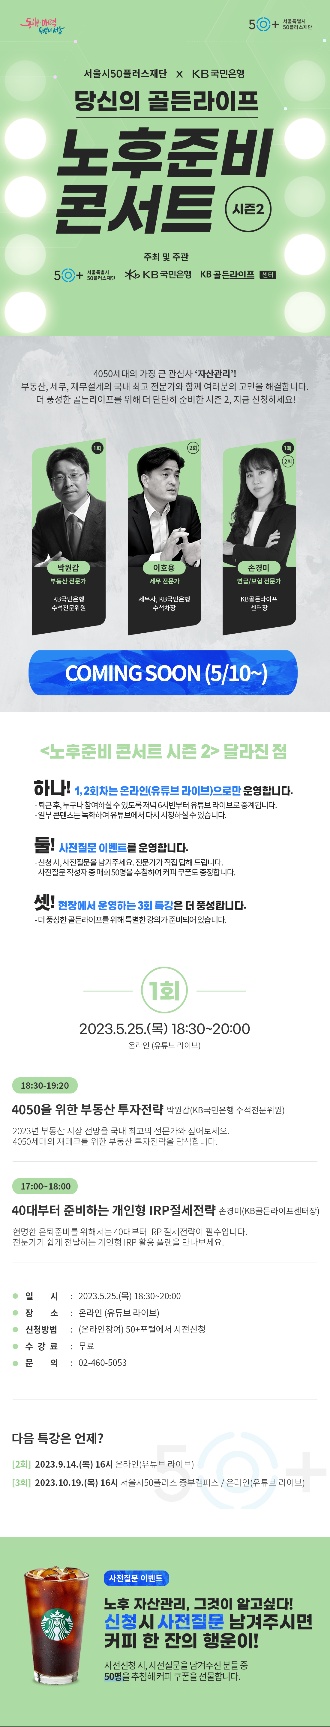 [게시판] 서울시 '노후준비 콘서트' 연중 세 차례 개최